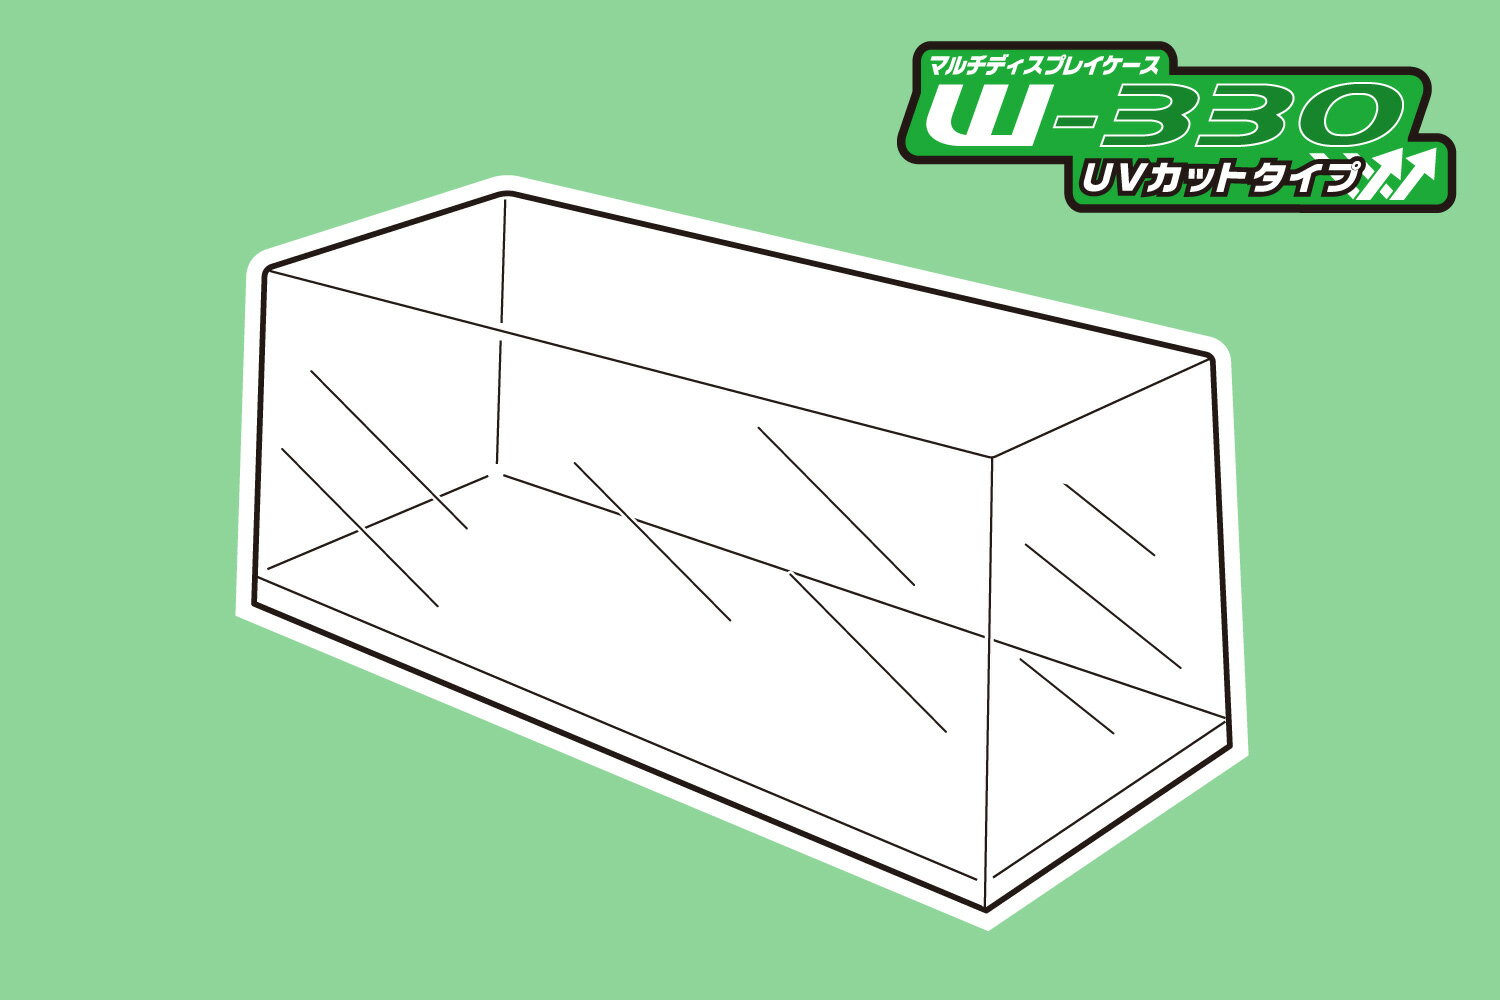 マルチディスプレイケースW330 (UVカットタイプ) 【大型ディスプレイケース No.2】